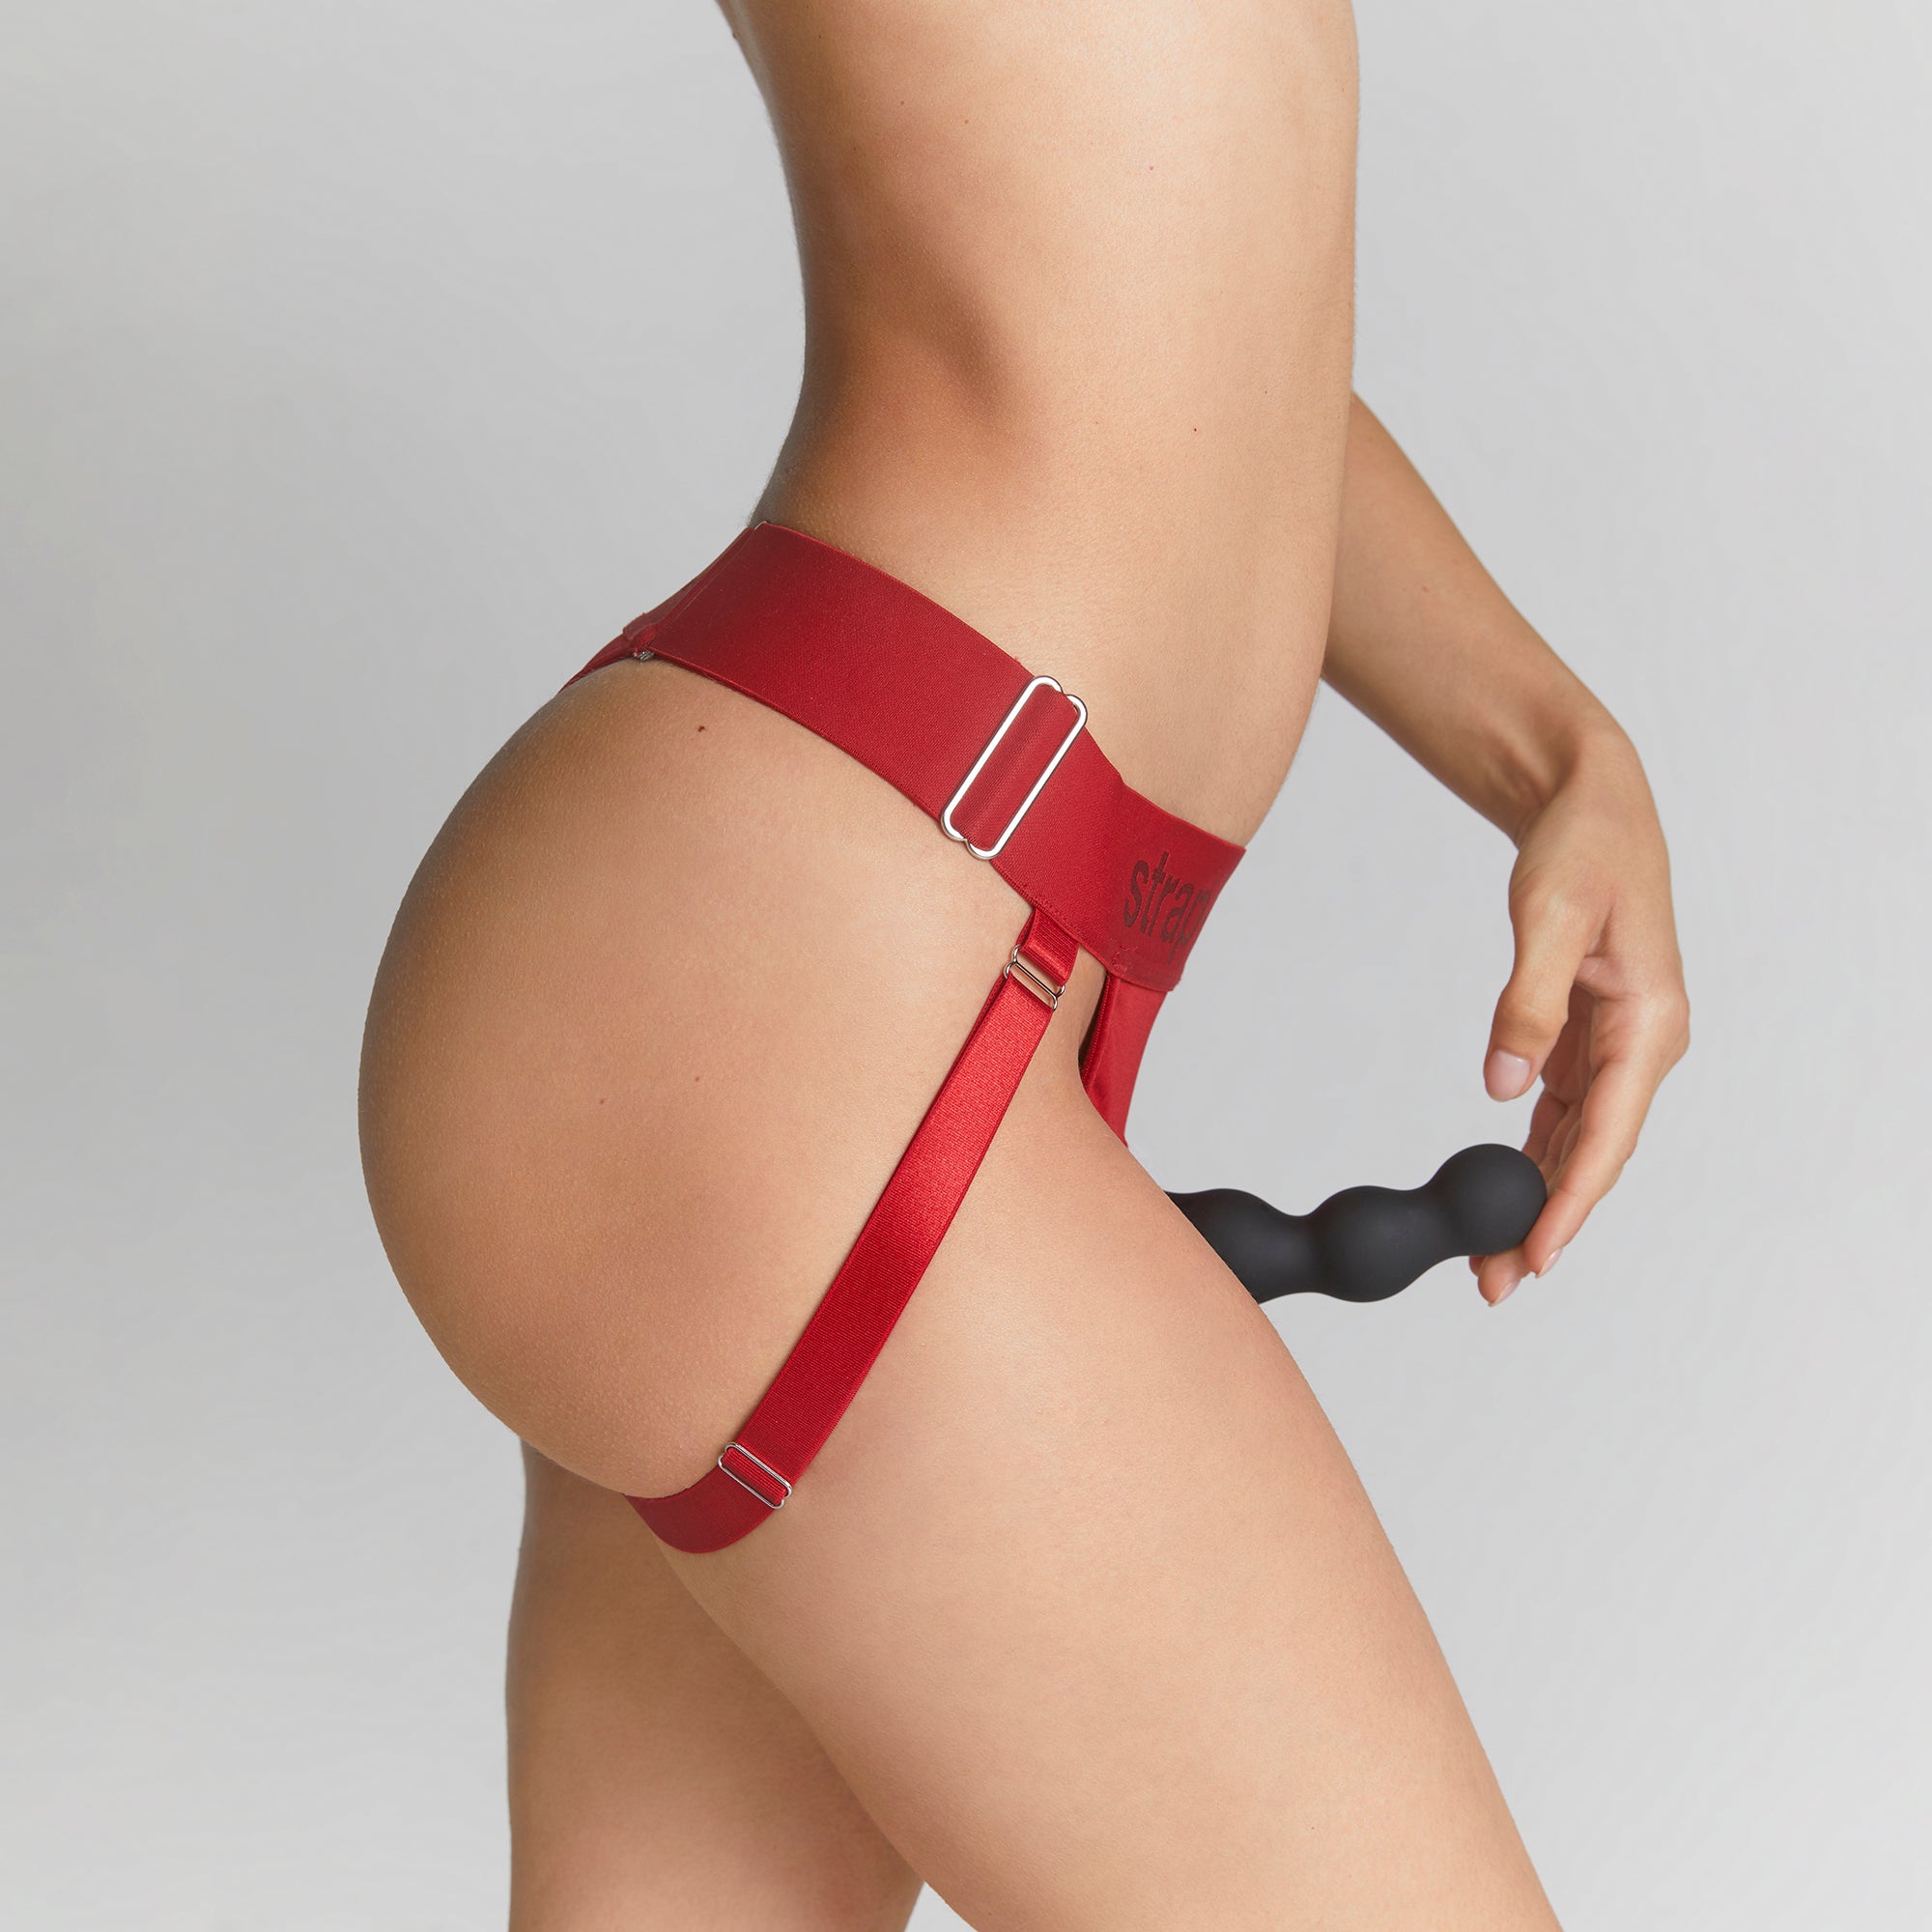 strap-on-me-harnais-lingerie-unique-rouge